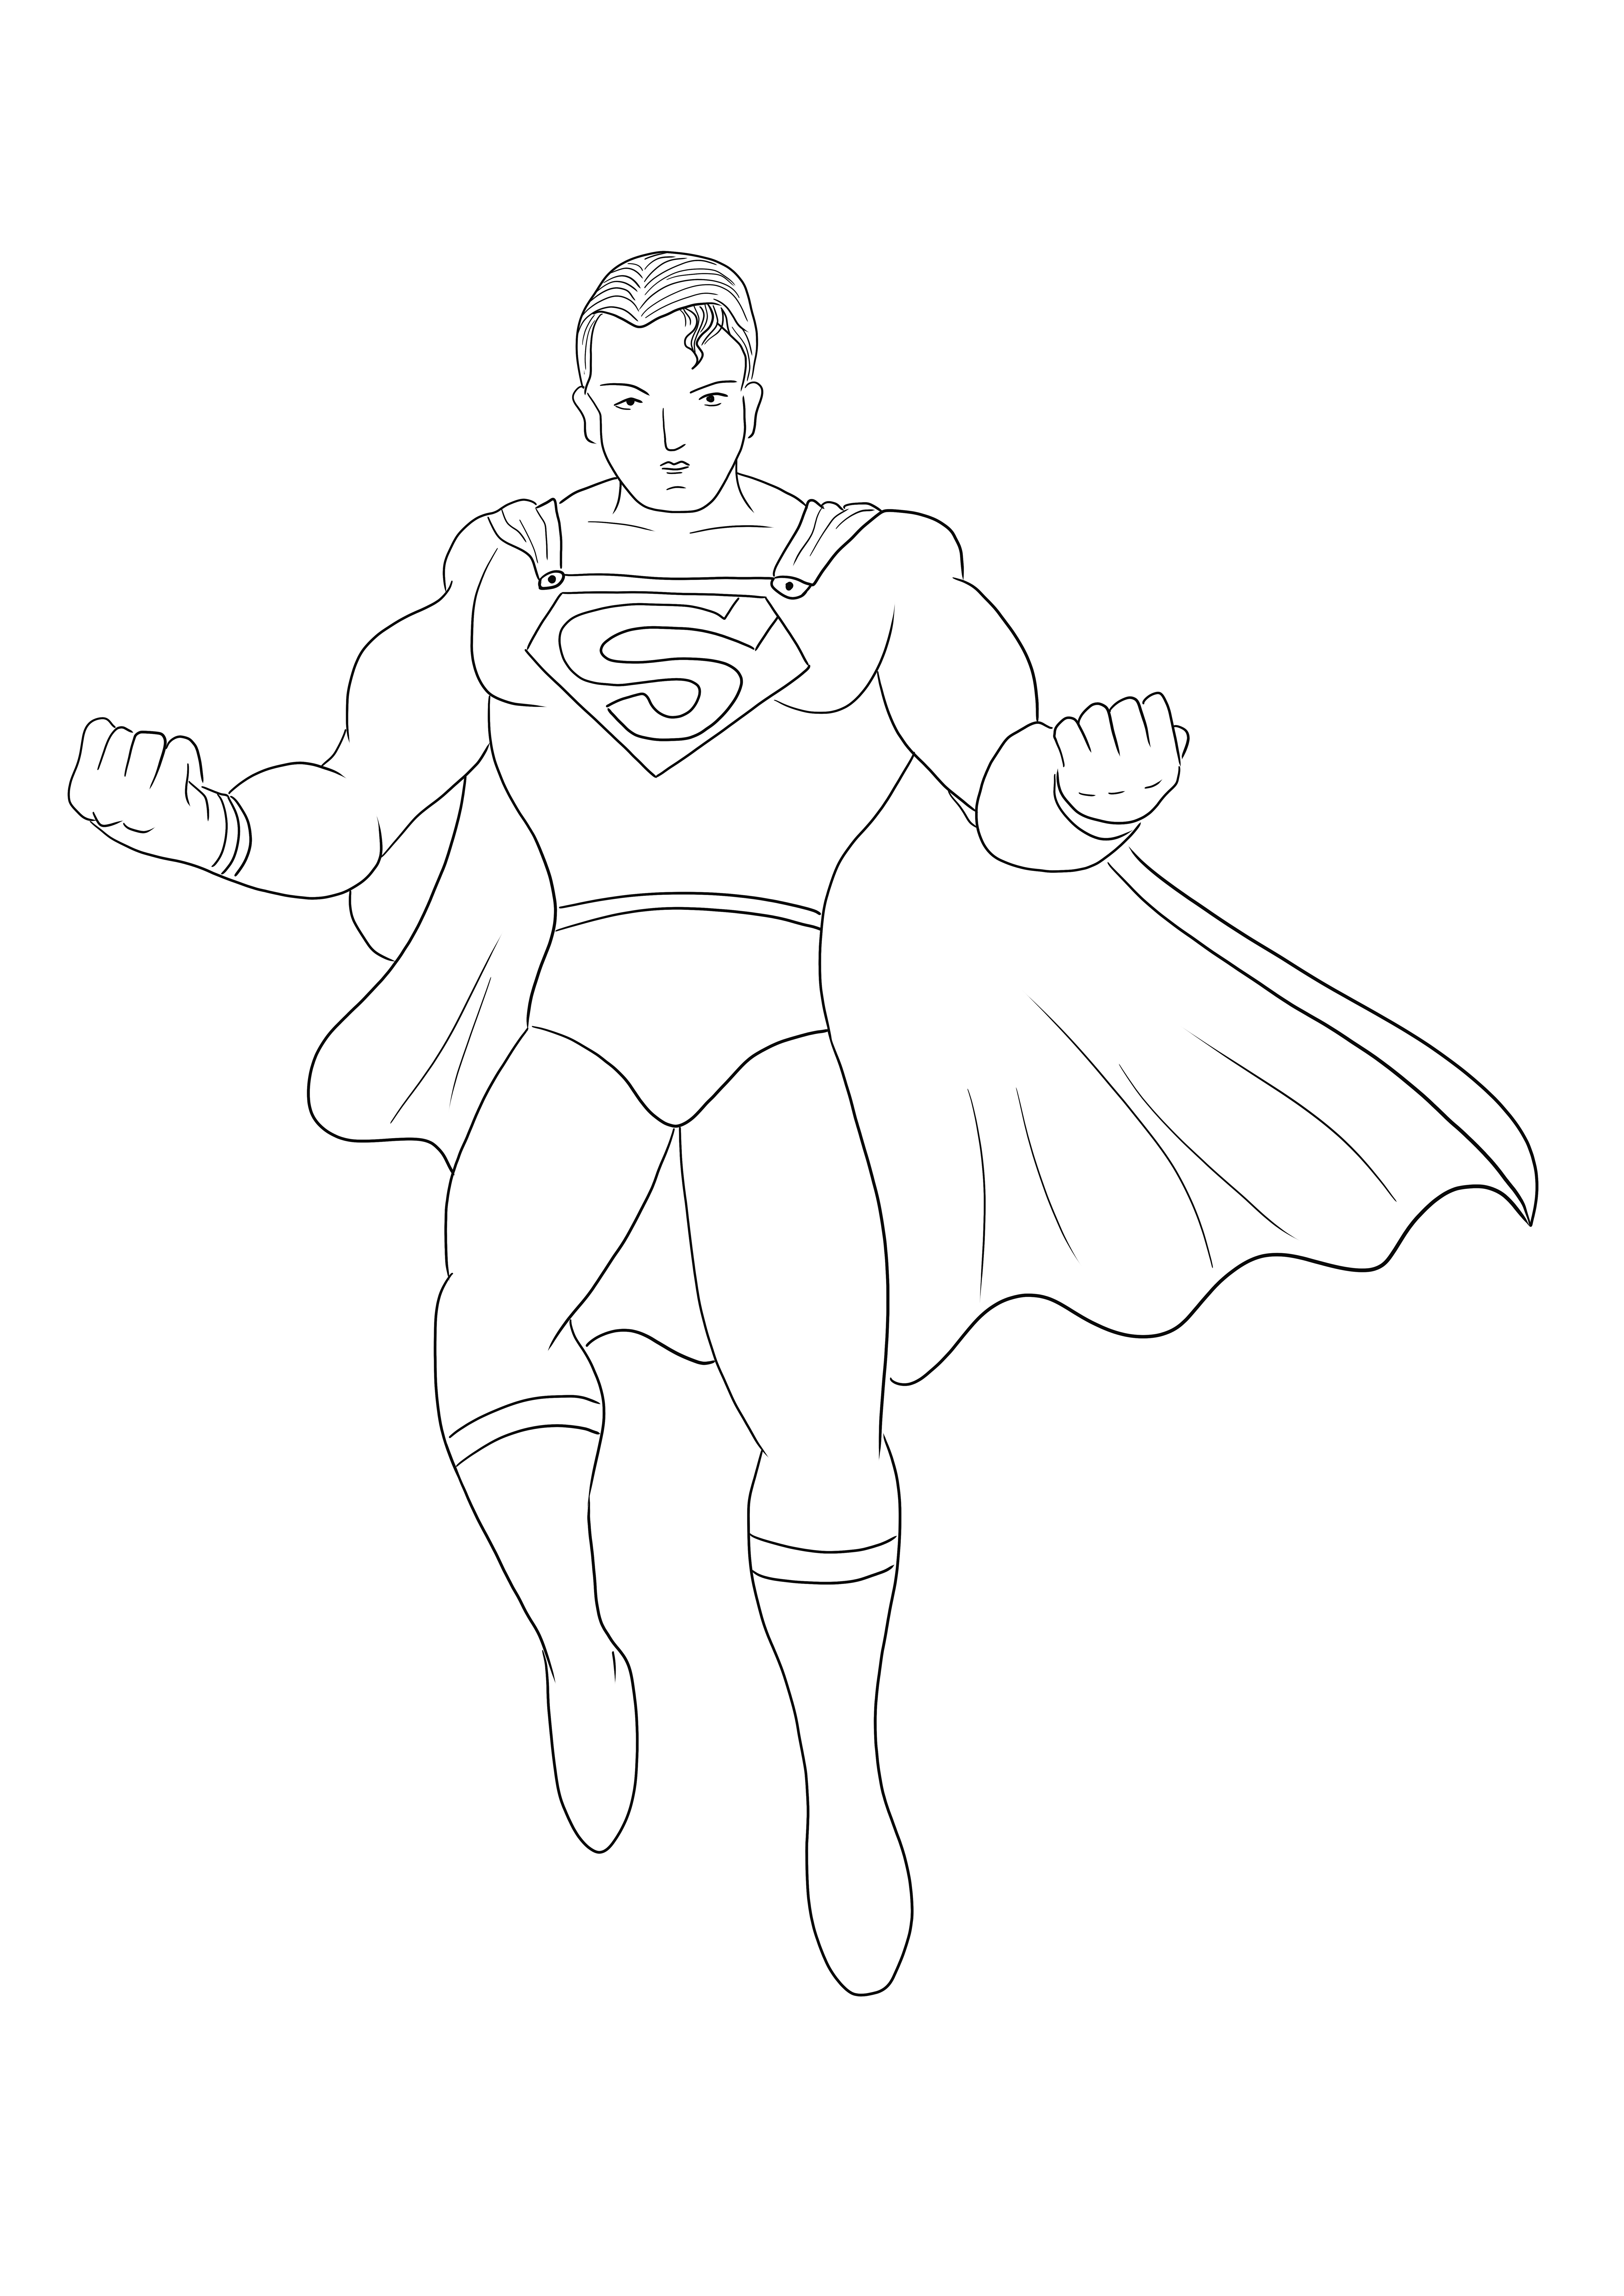 Il semplice e facile foglio da colorare dell'eroe di Superman da stampare gratuitamente